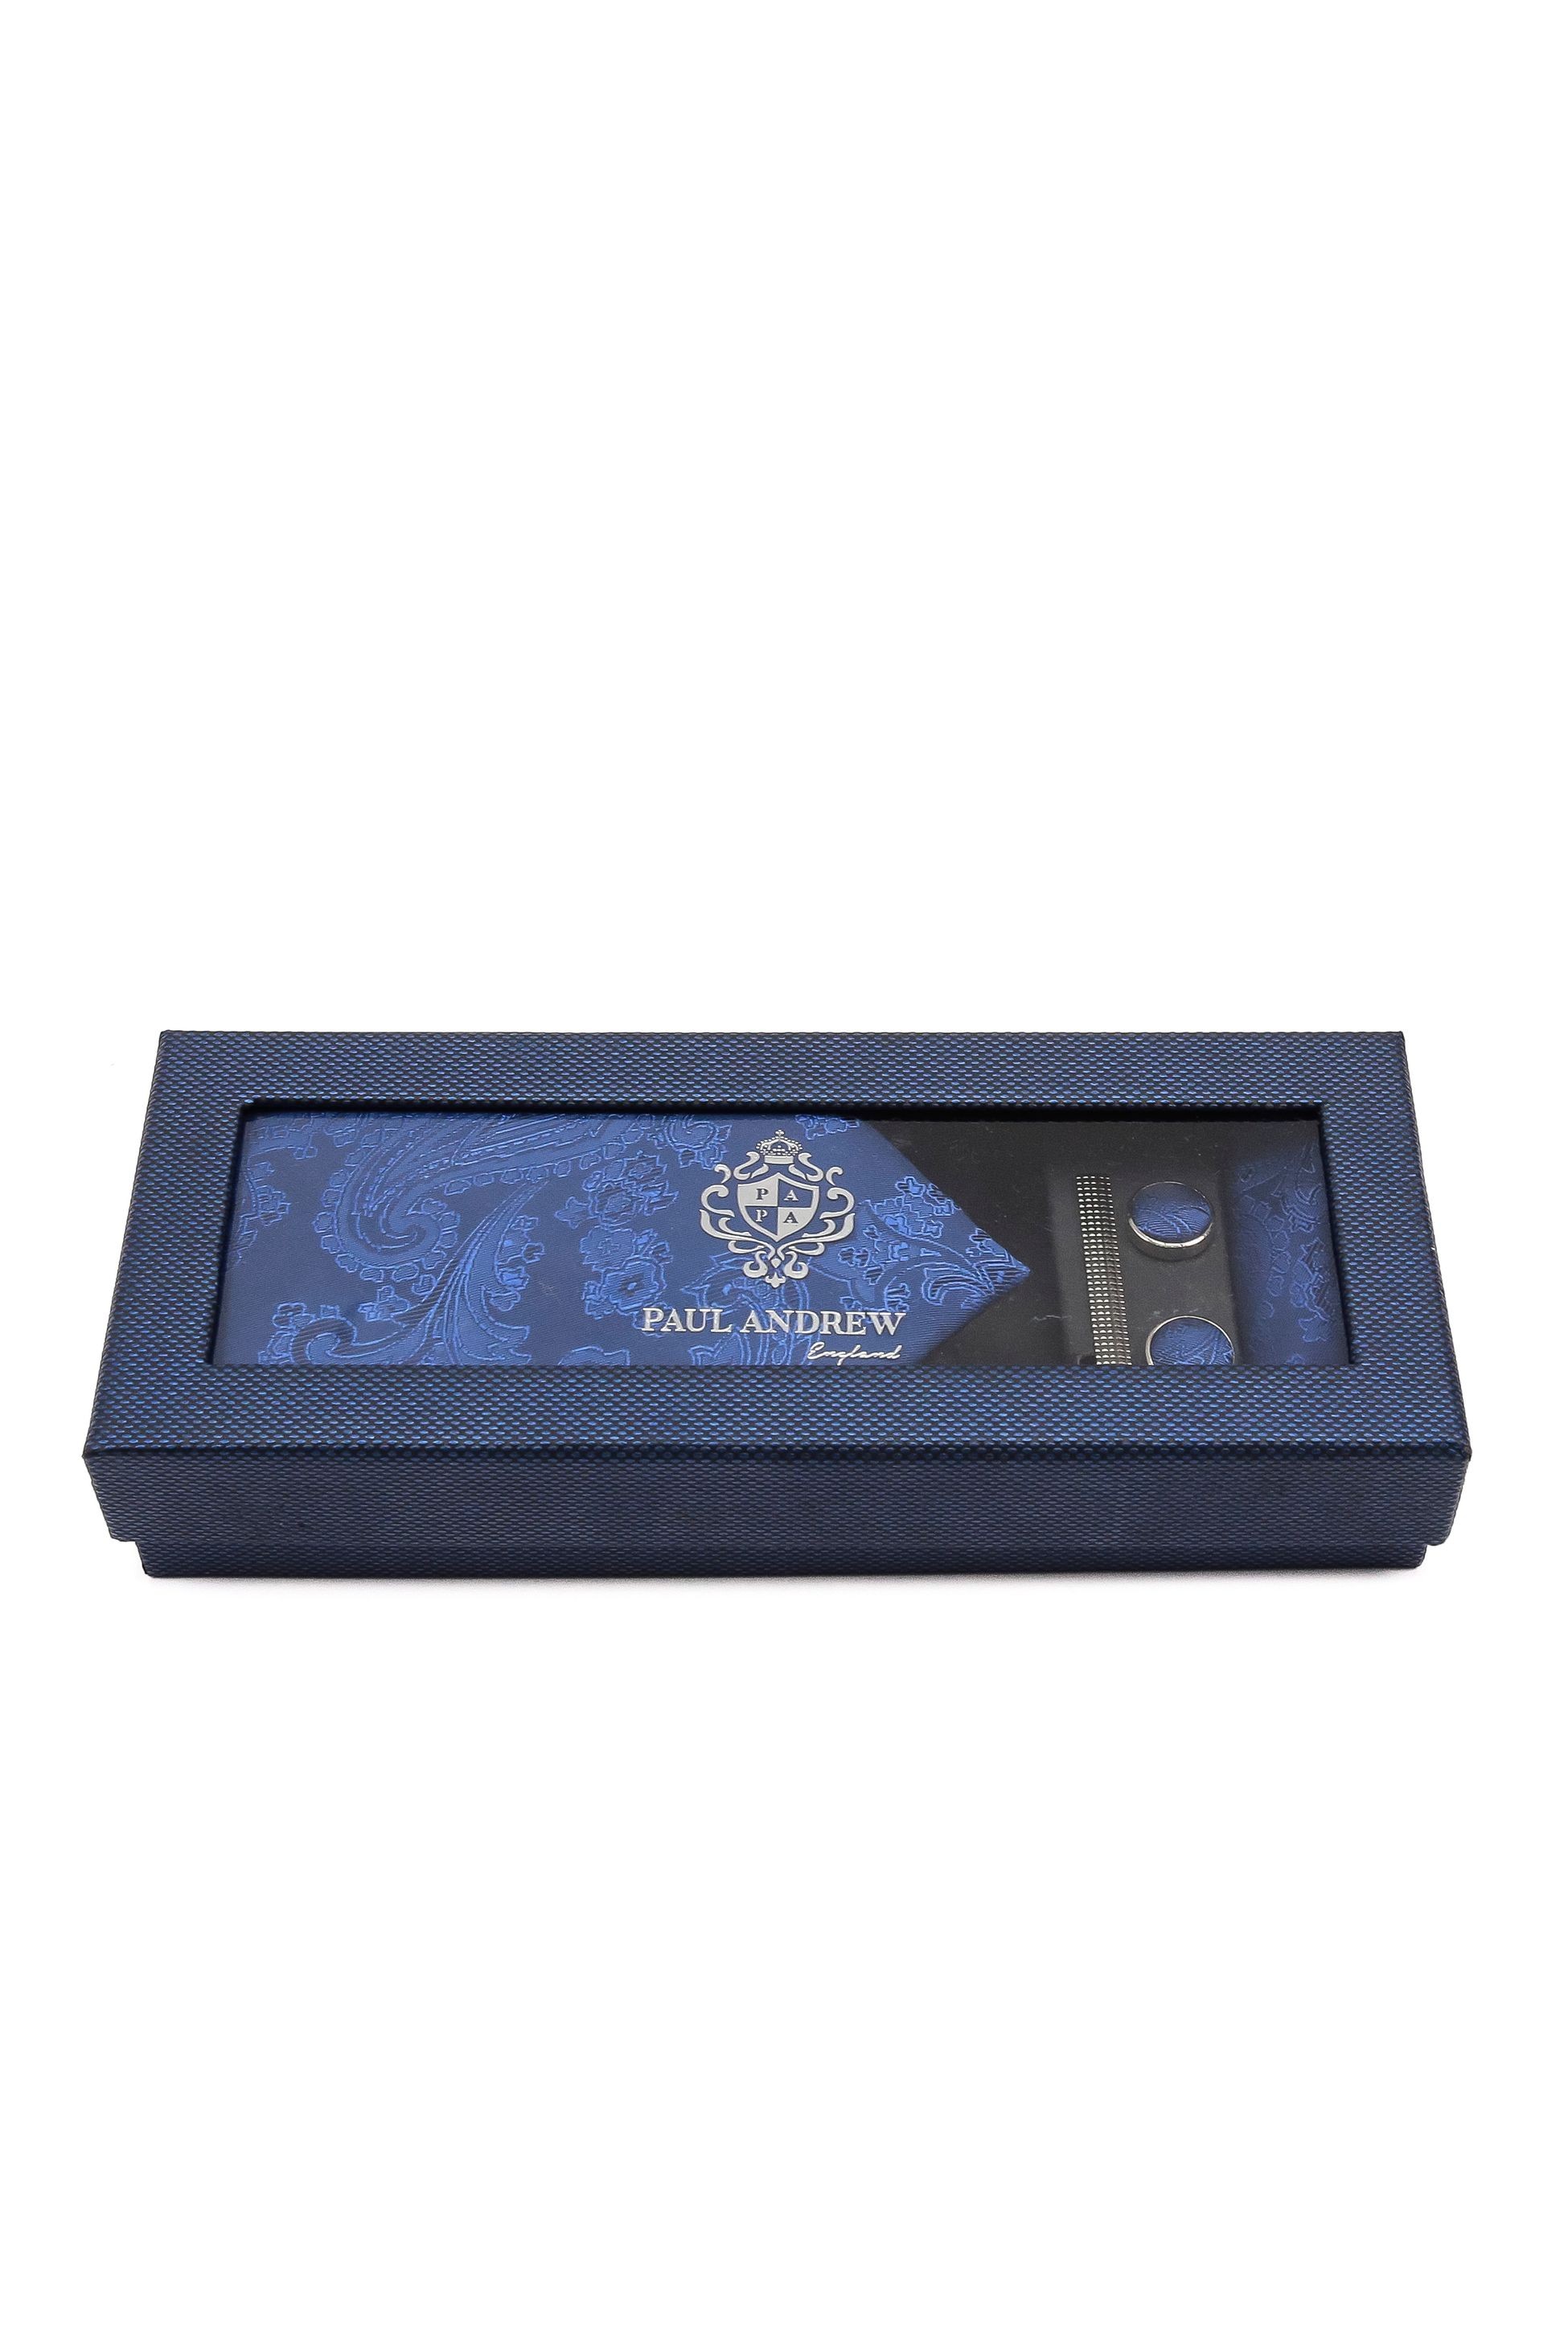 Herren Tonal Paisley Binde Manschettenknopf 4 Teiliges Geschenkset - Blau